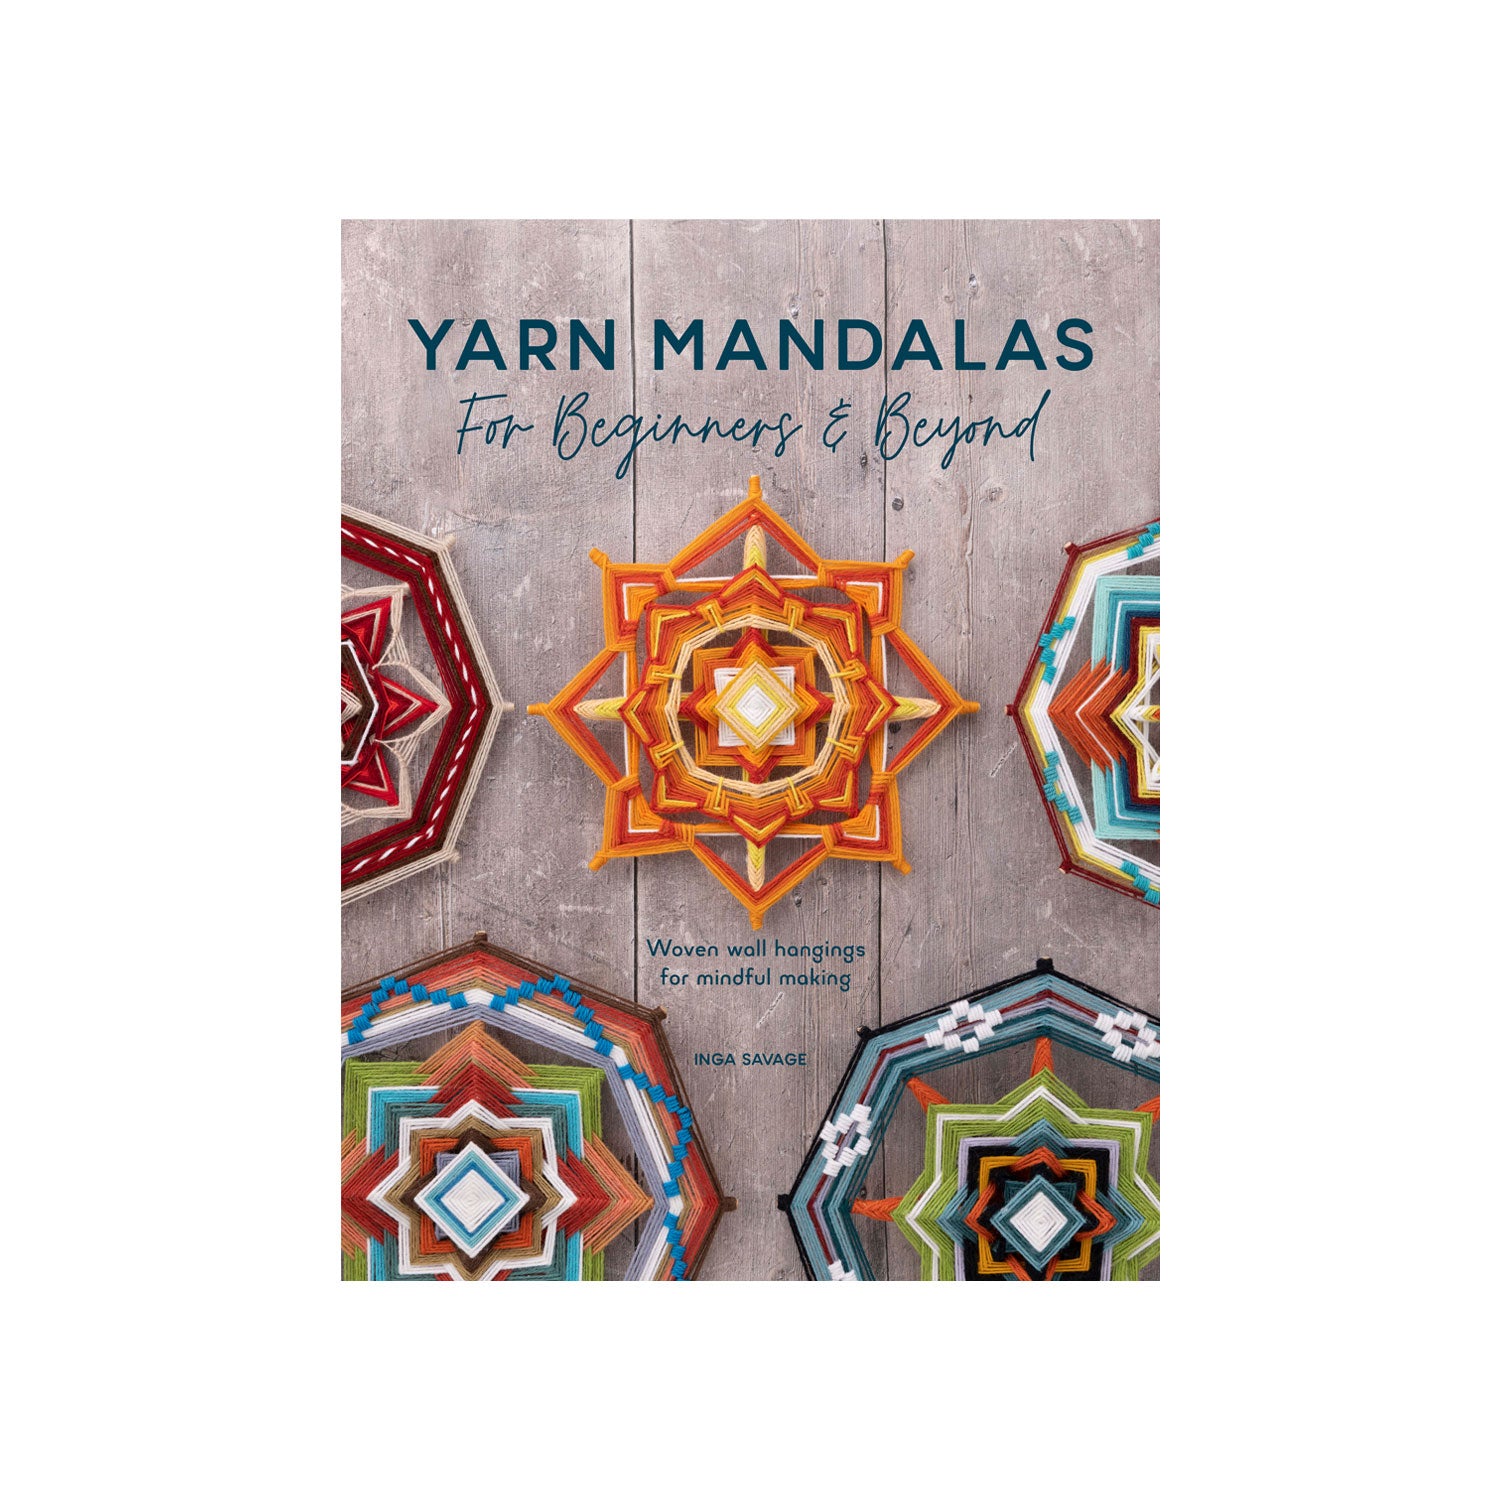 Yarn Mandalas - Inga Savage